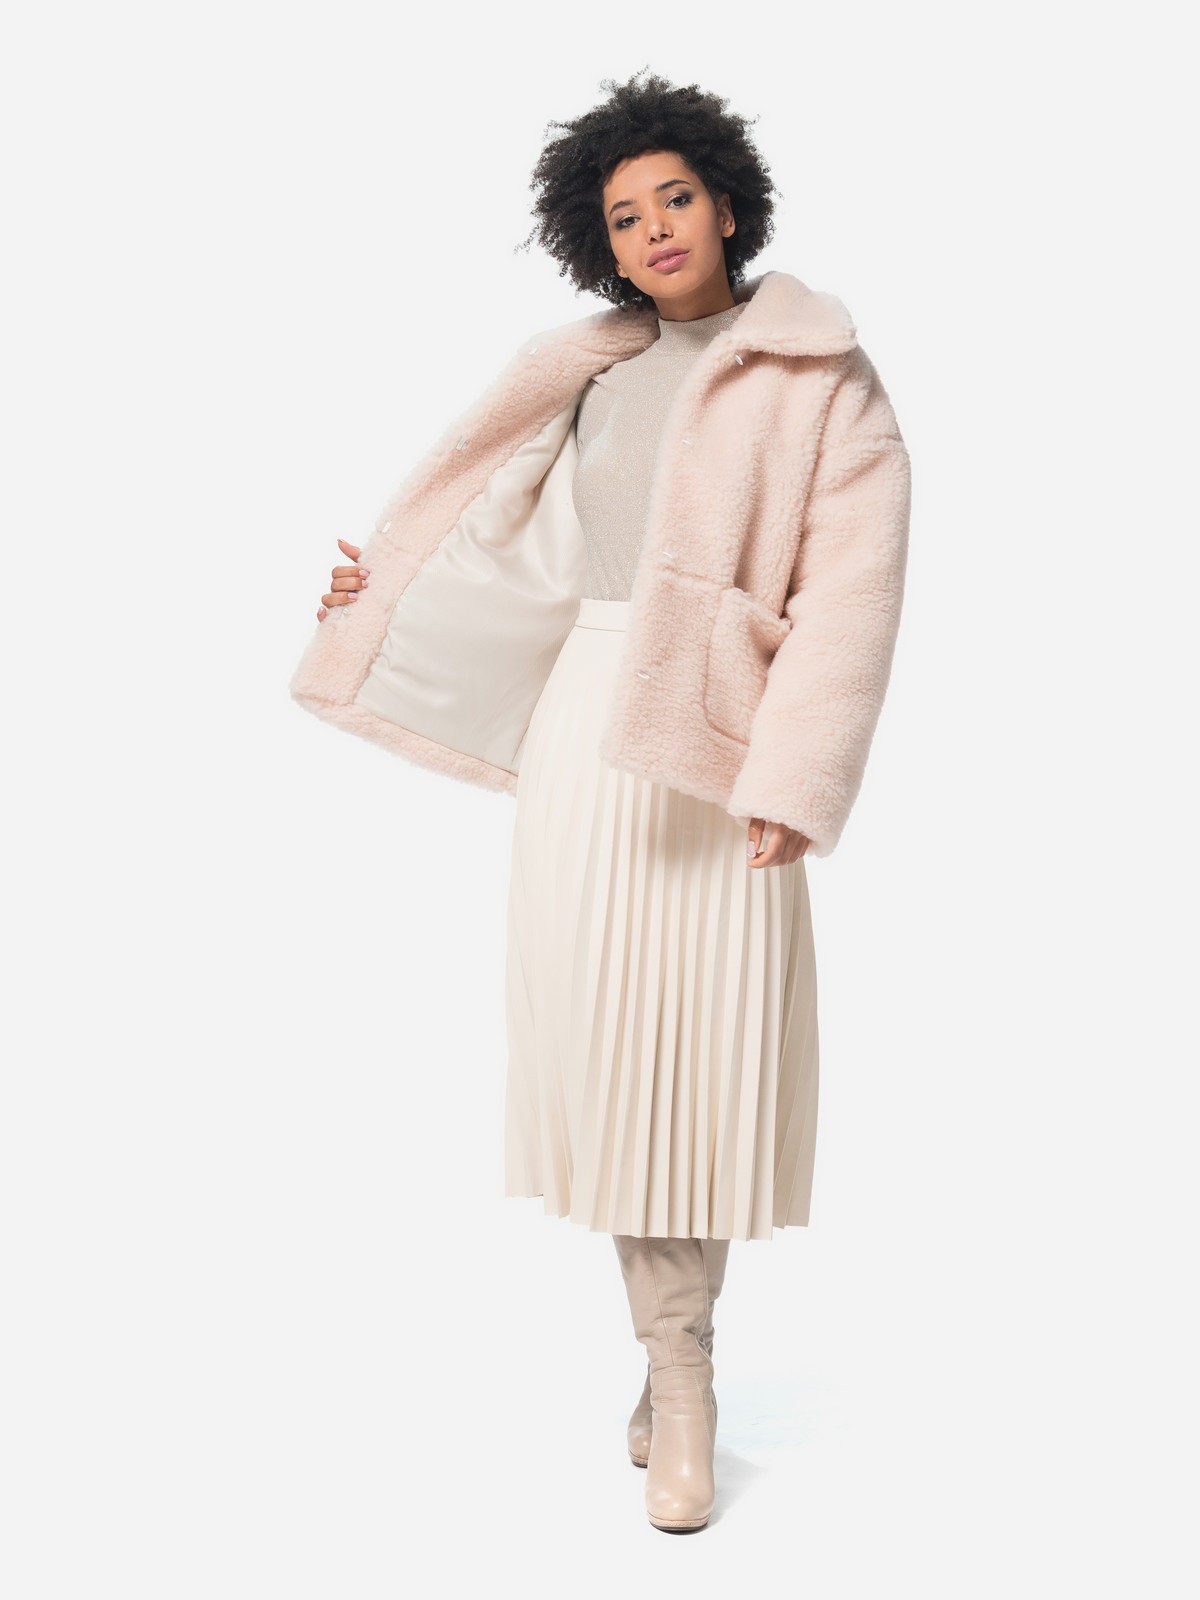 Женская Шуба из шерсти натуральная Розовая Модель Эдем короткая | Фото №7